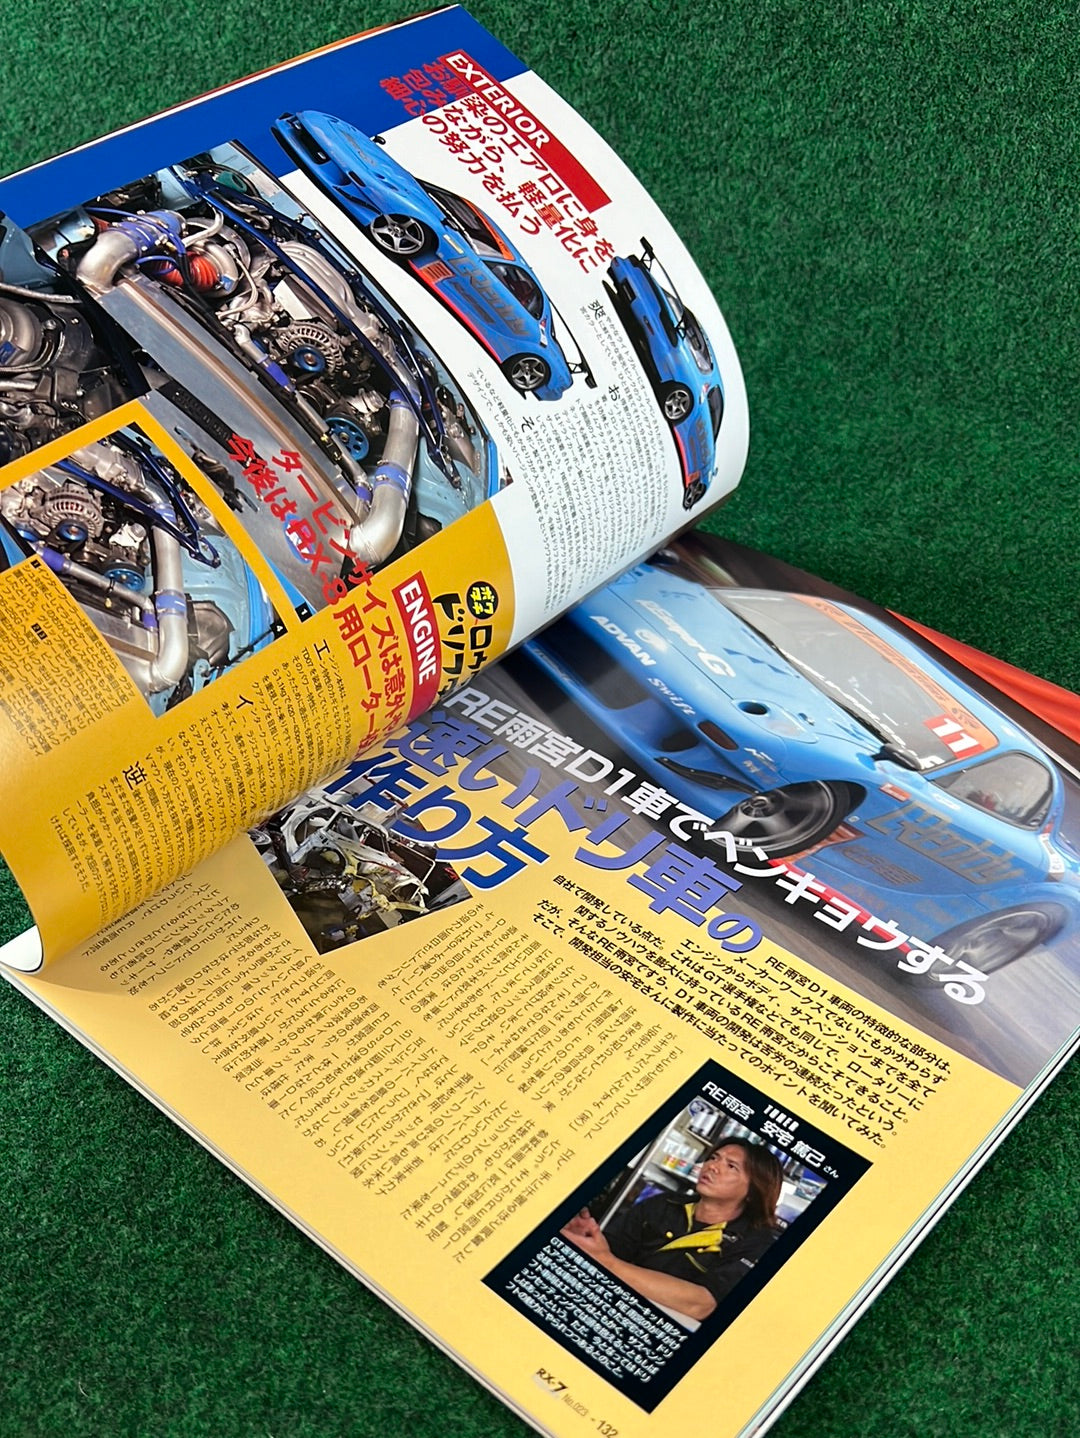 RX7 Magazine - No. 020 through No. 024